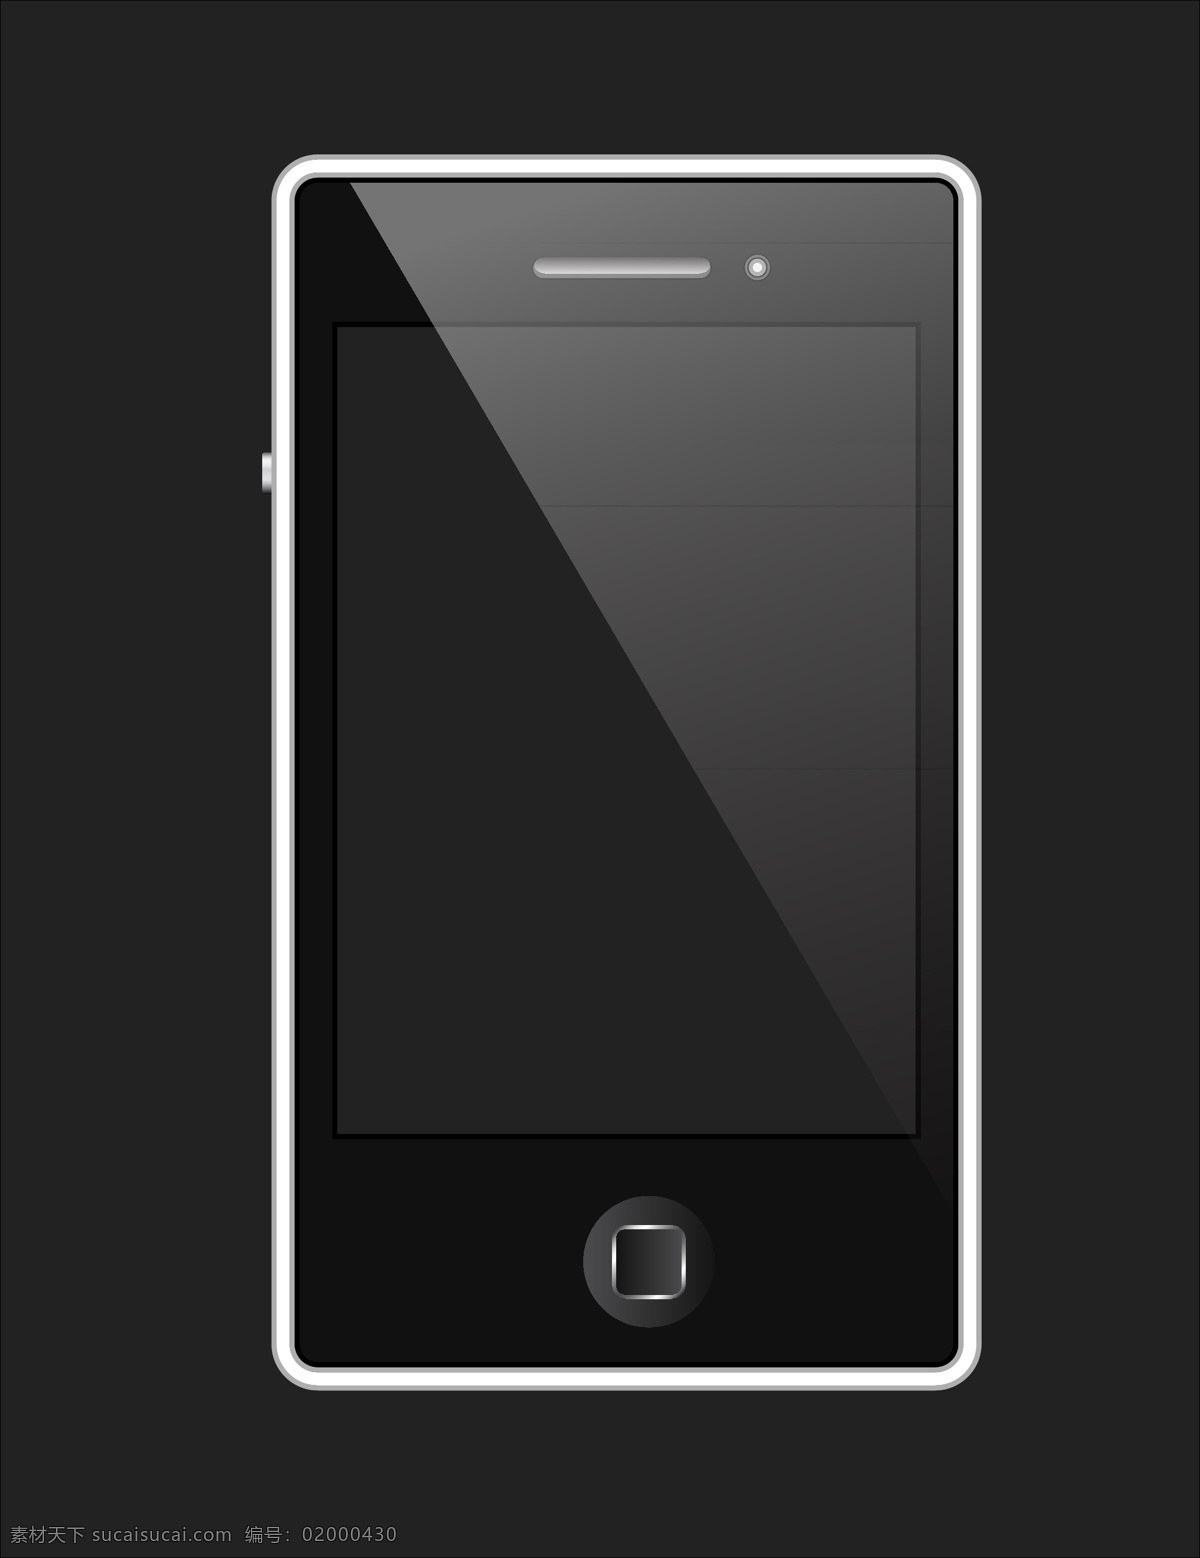 手机矢量素材 卡通 手机 矢量素材 设计素材 背景素材